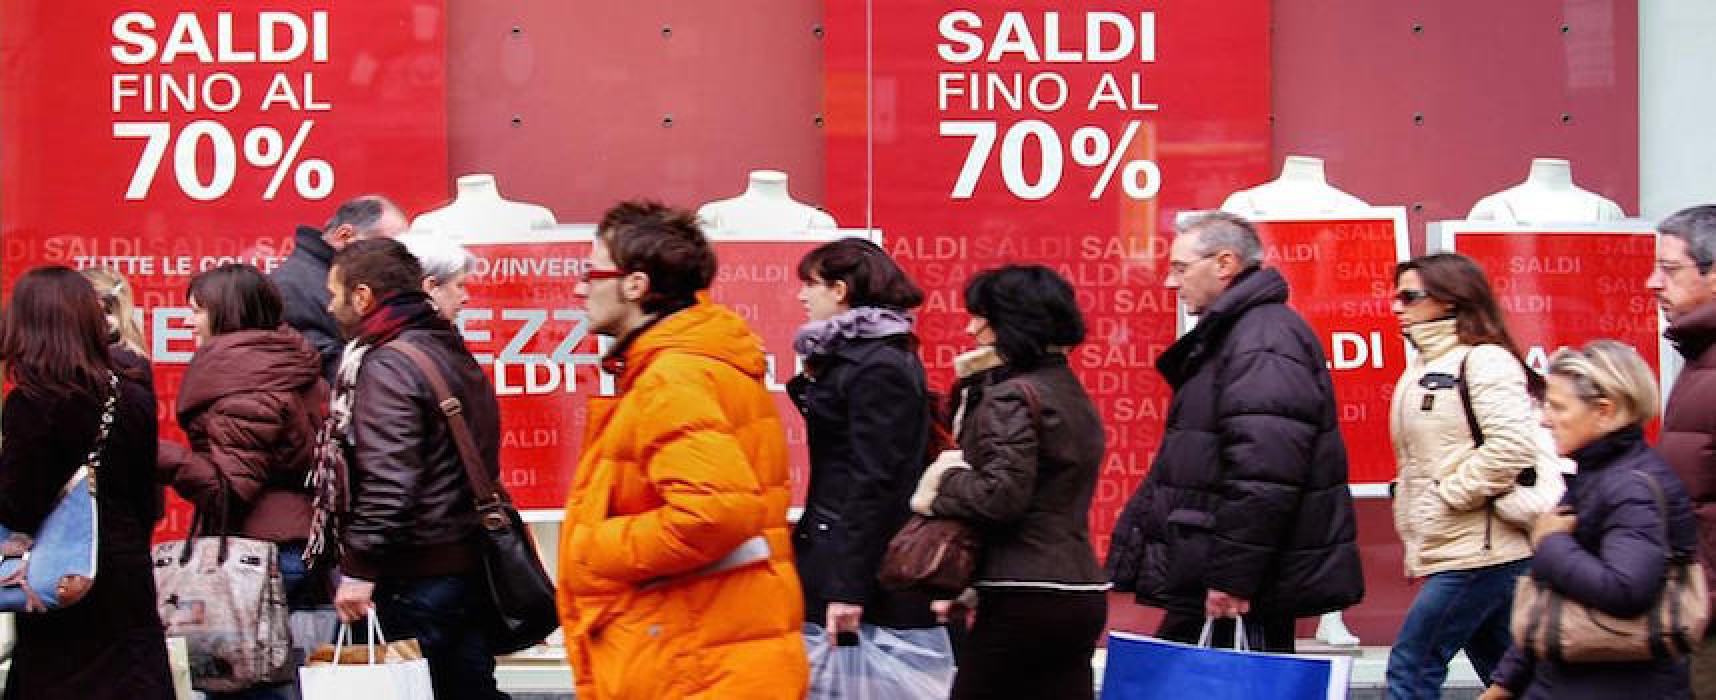 Saldi, il bilancio di Leo Carriera (Confcommercio): “Lievi segnali di miglioramento”